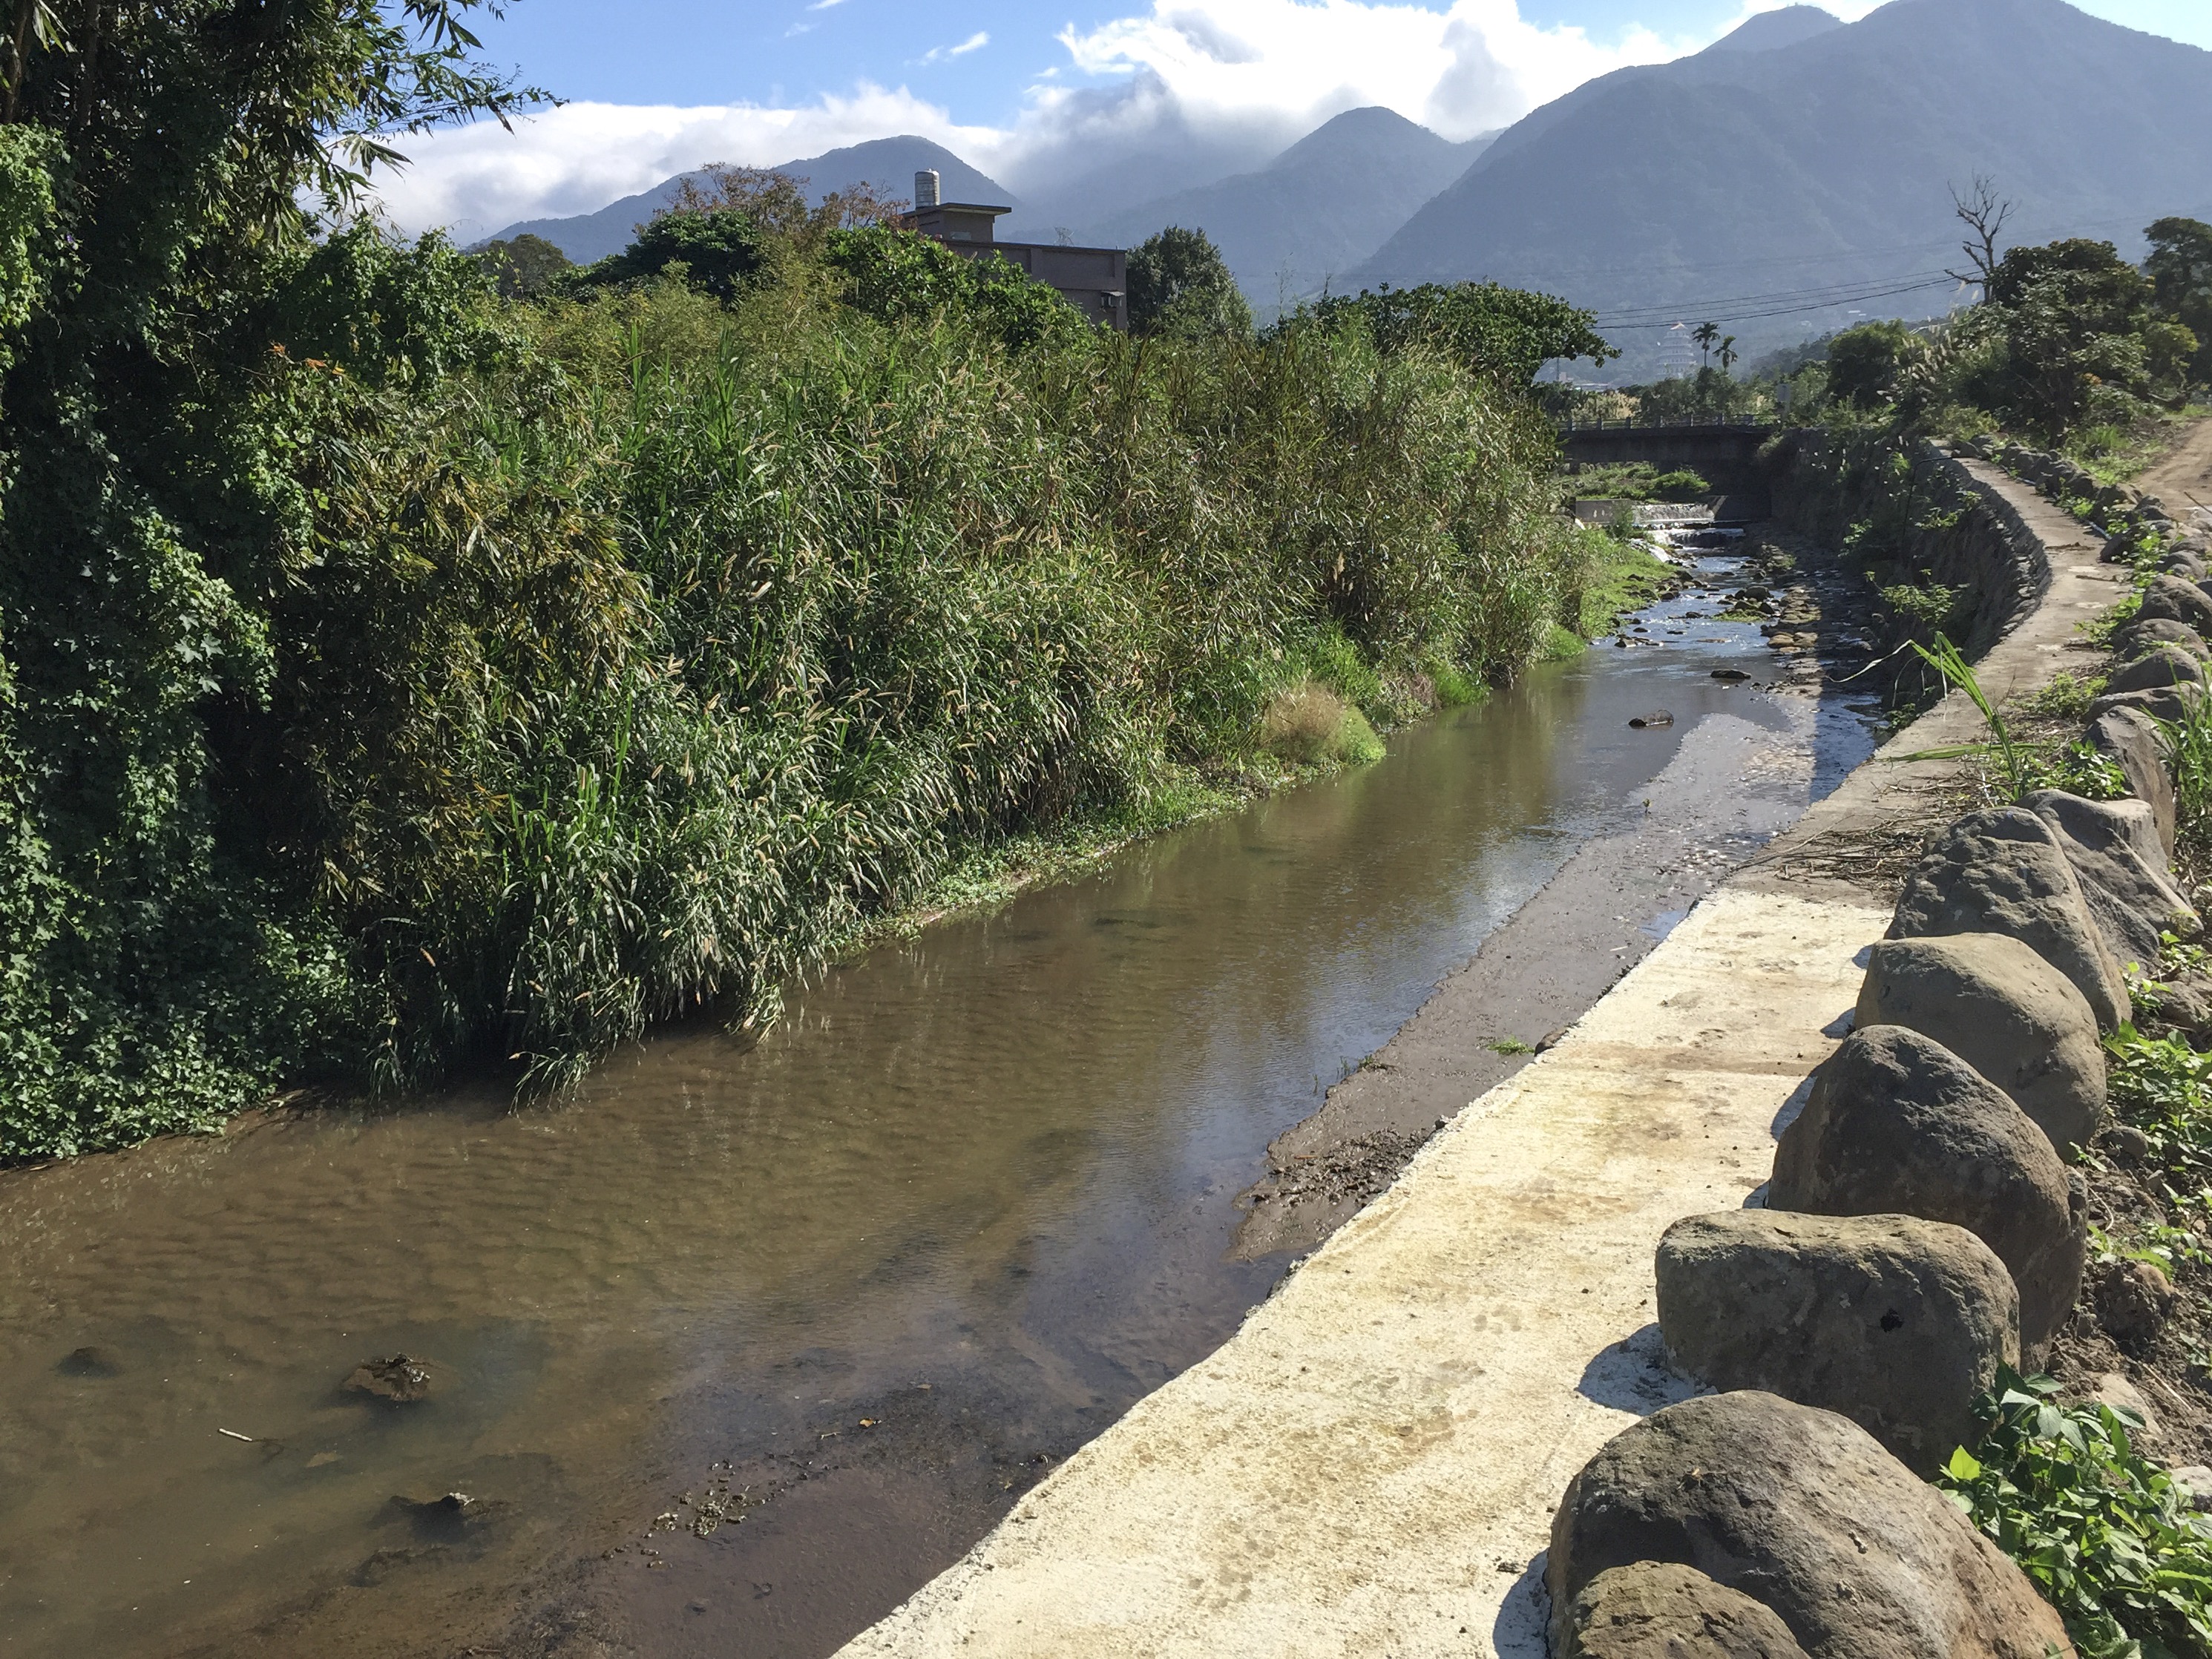 攔水堰造成河道上游淤積影響生態